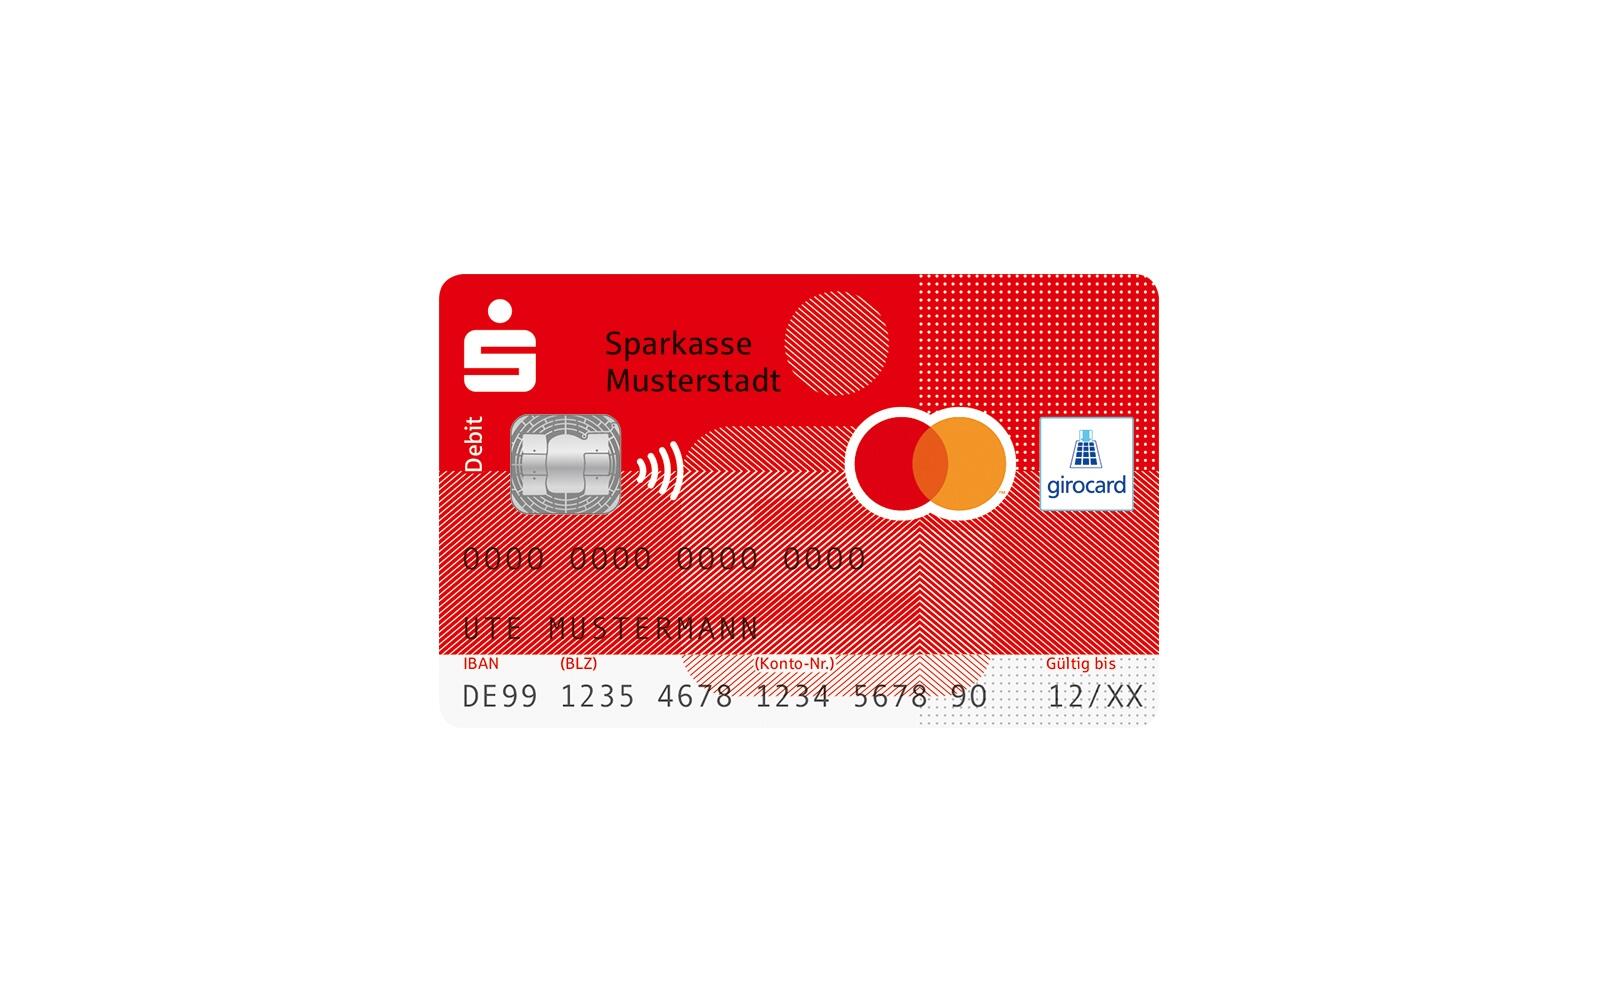 Sparkassen Starten Girocard Mit Co Badge Debit Mastercard